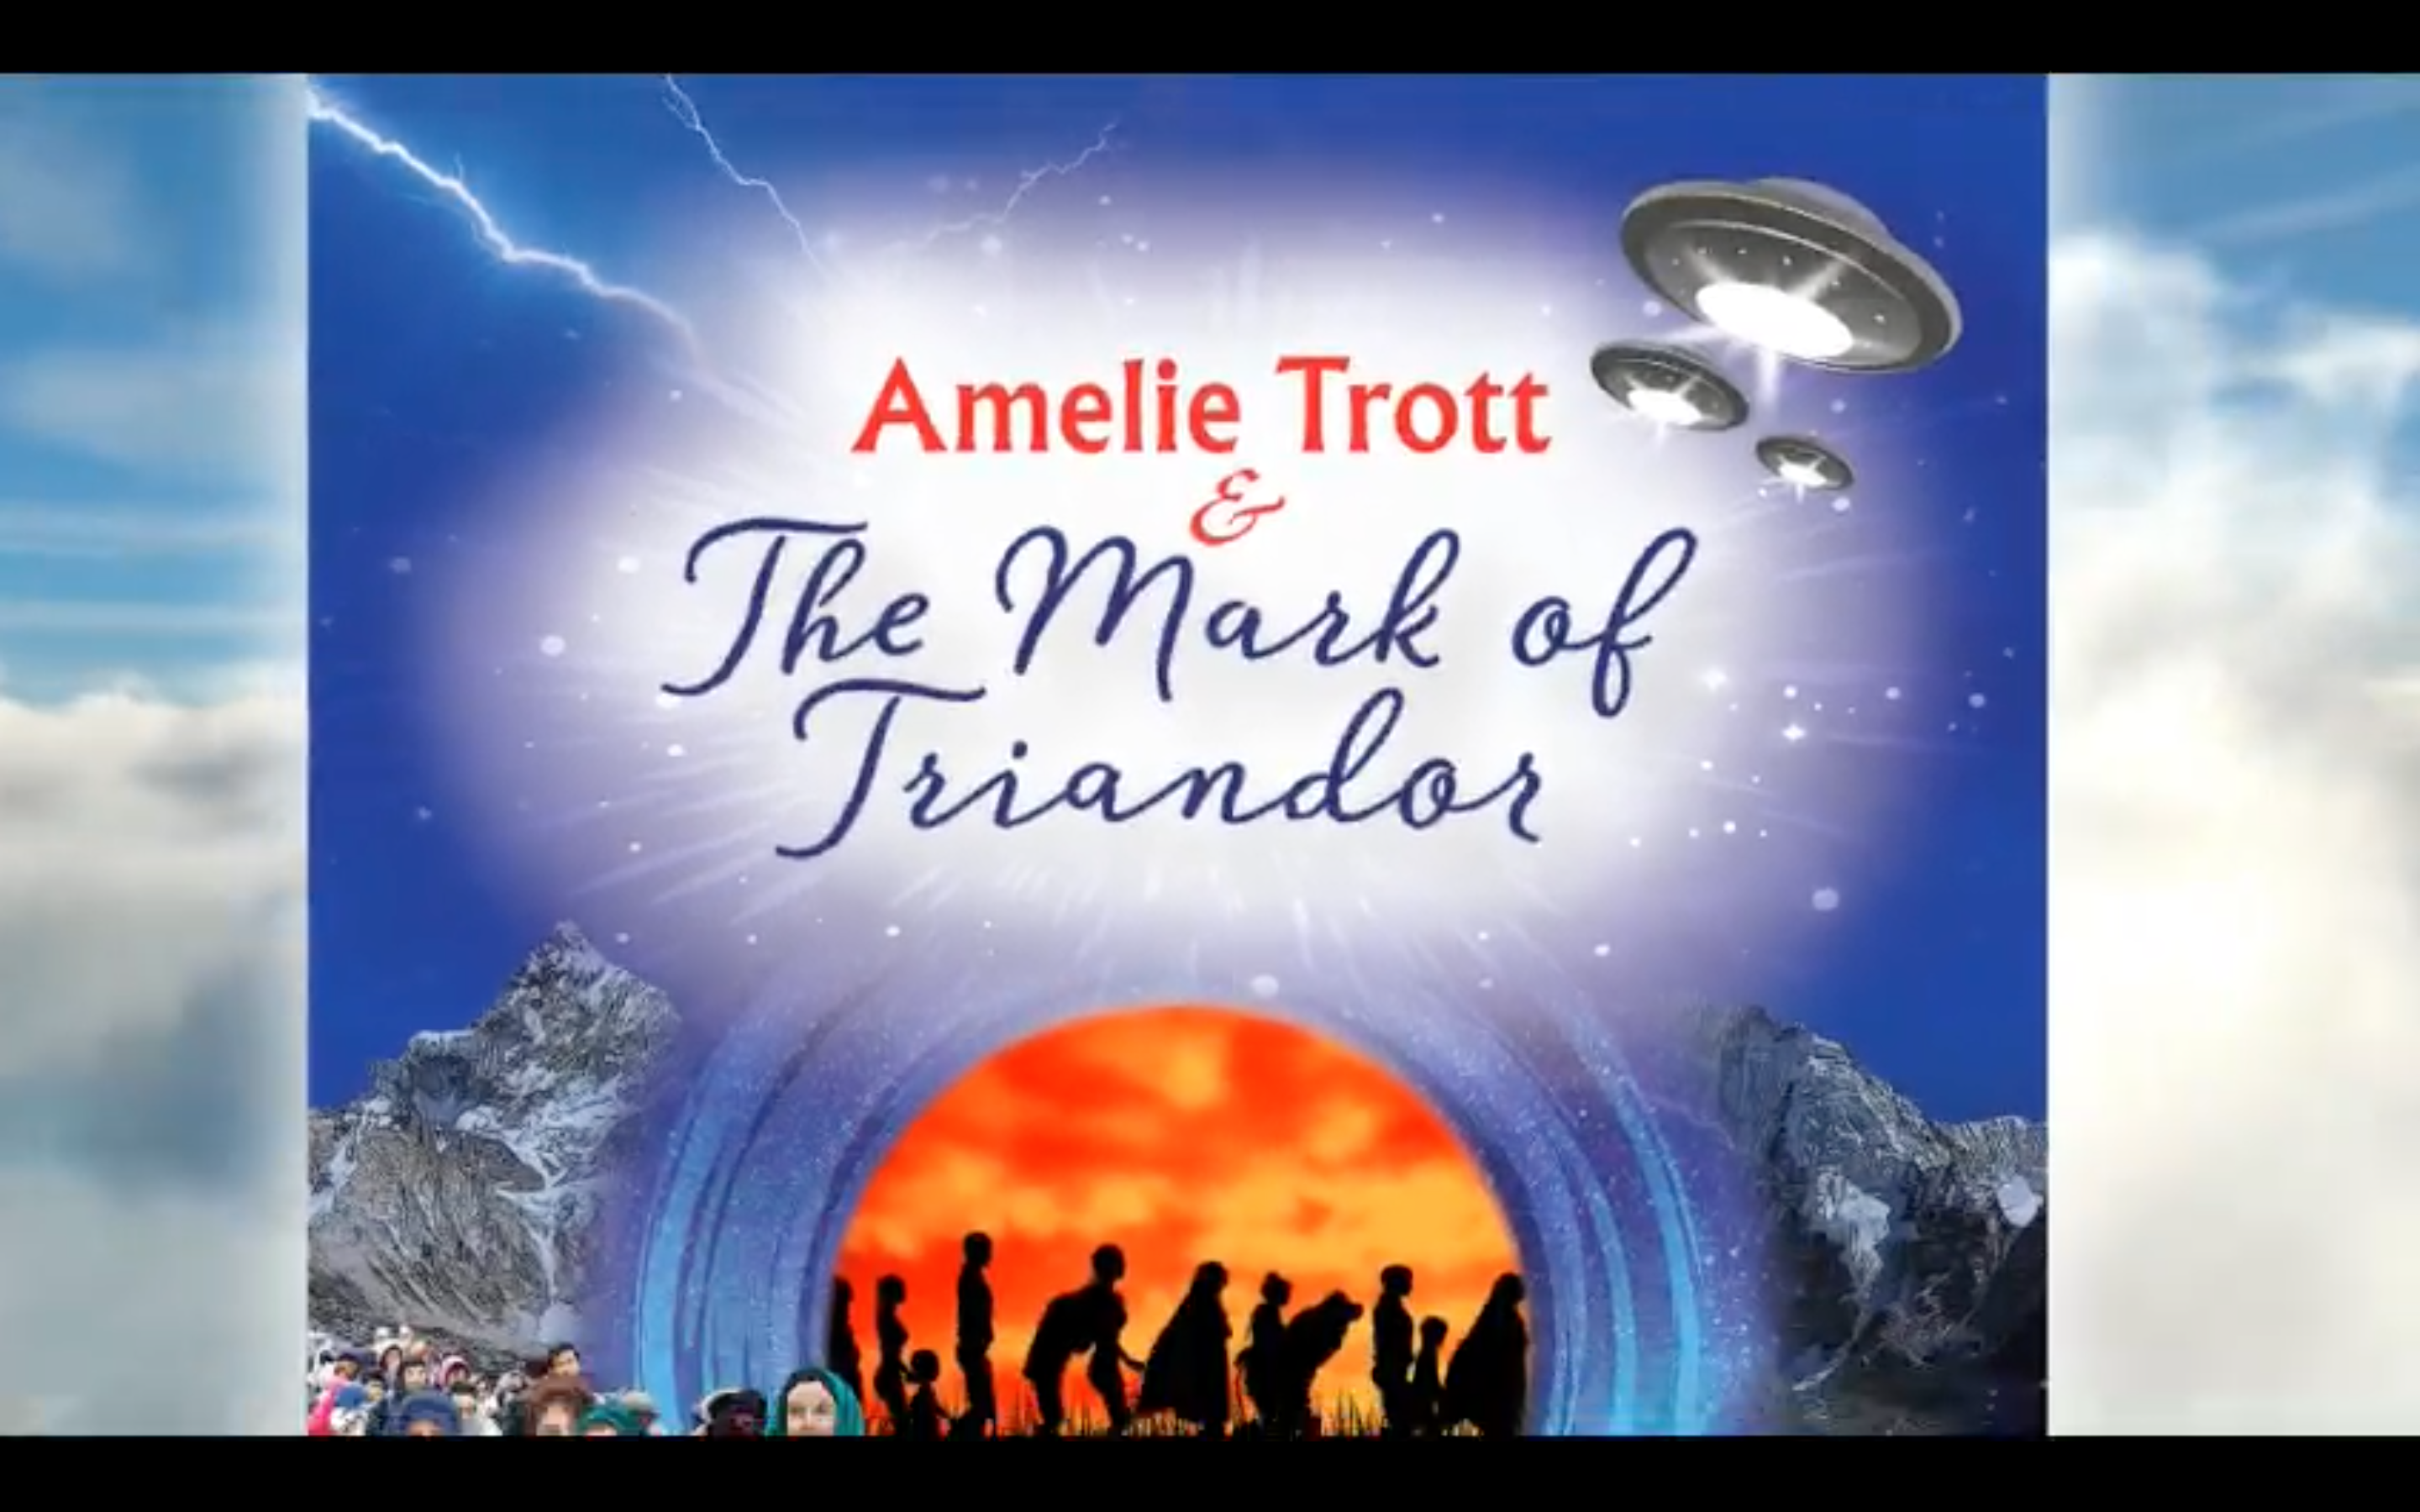 Amelie Trott The Mask of Triandor